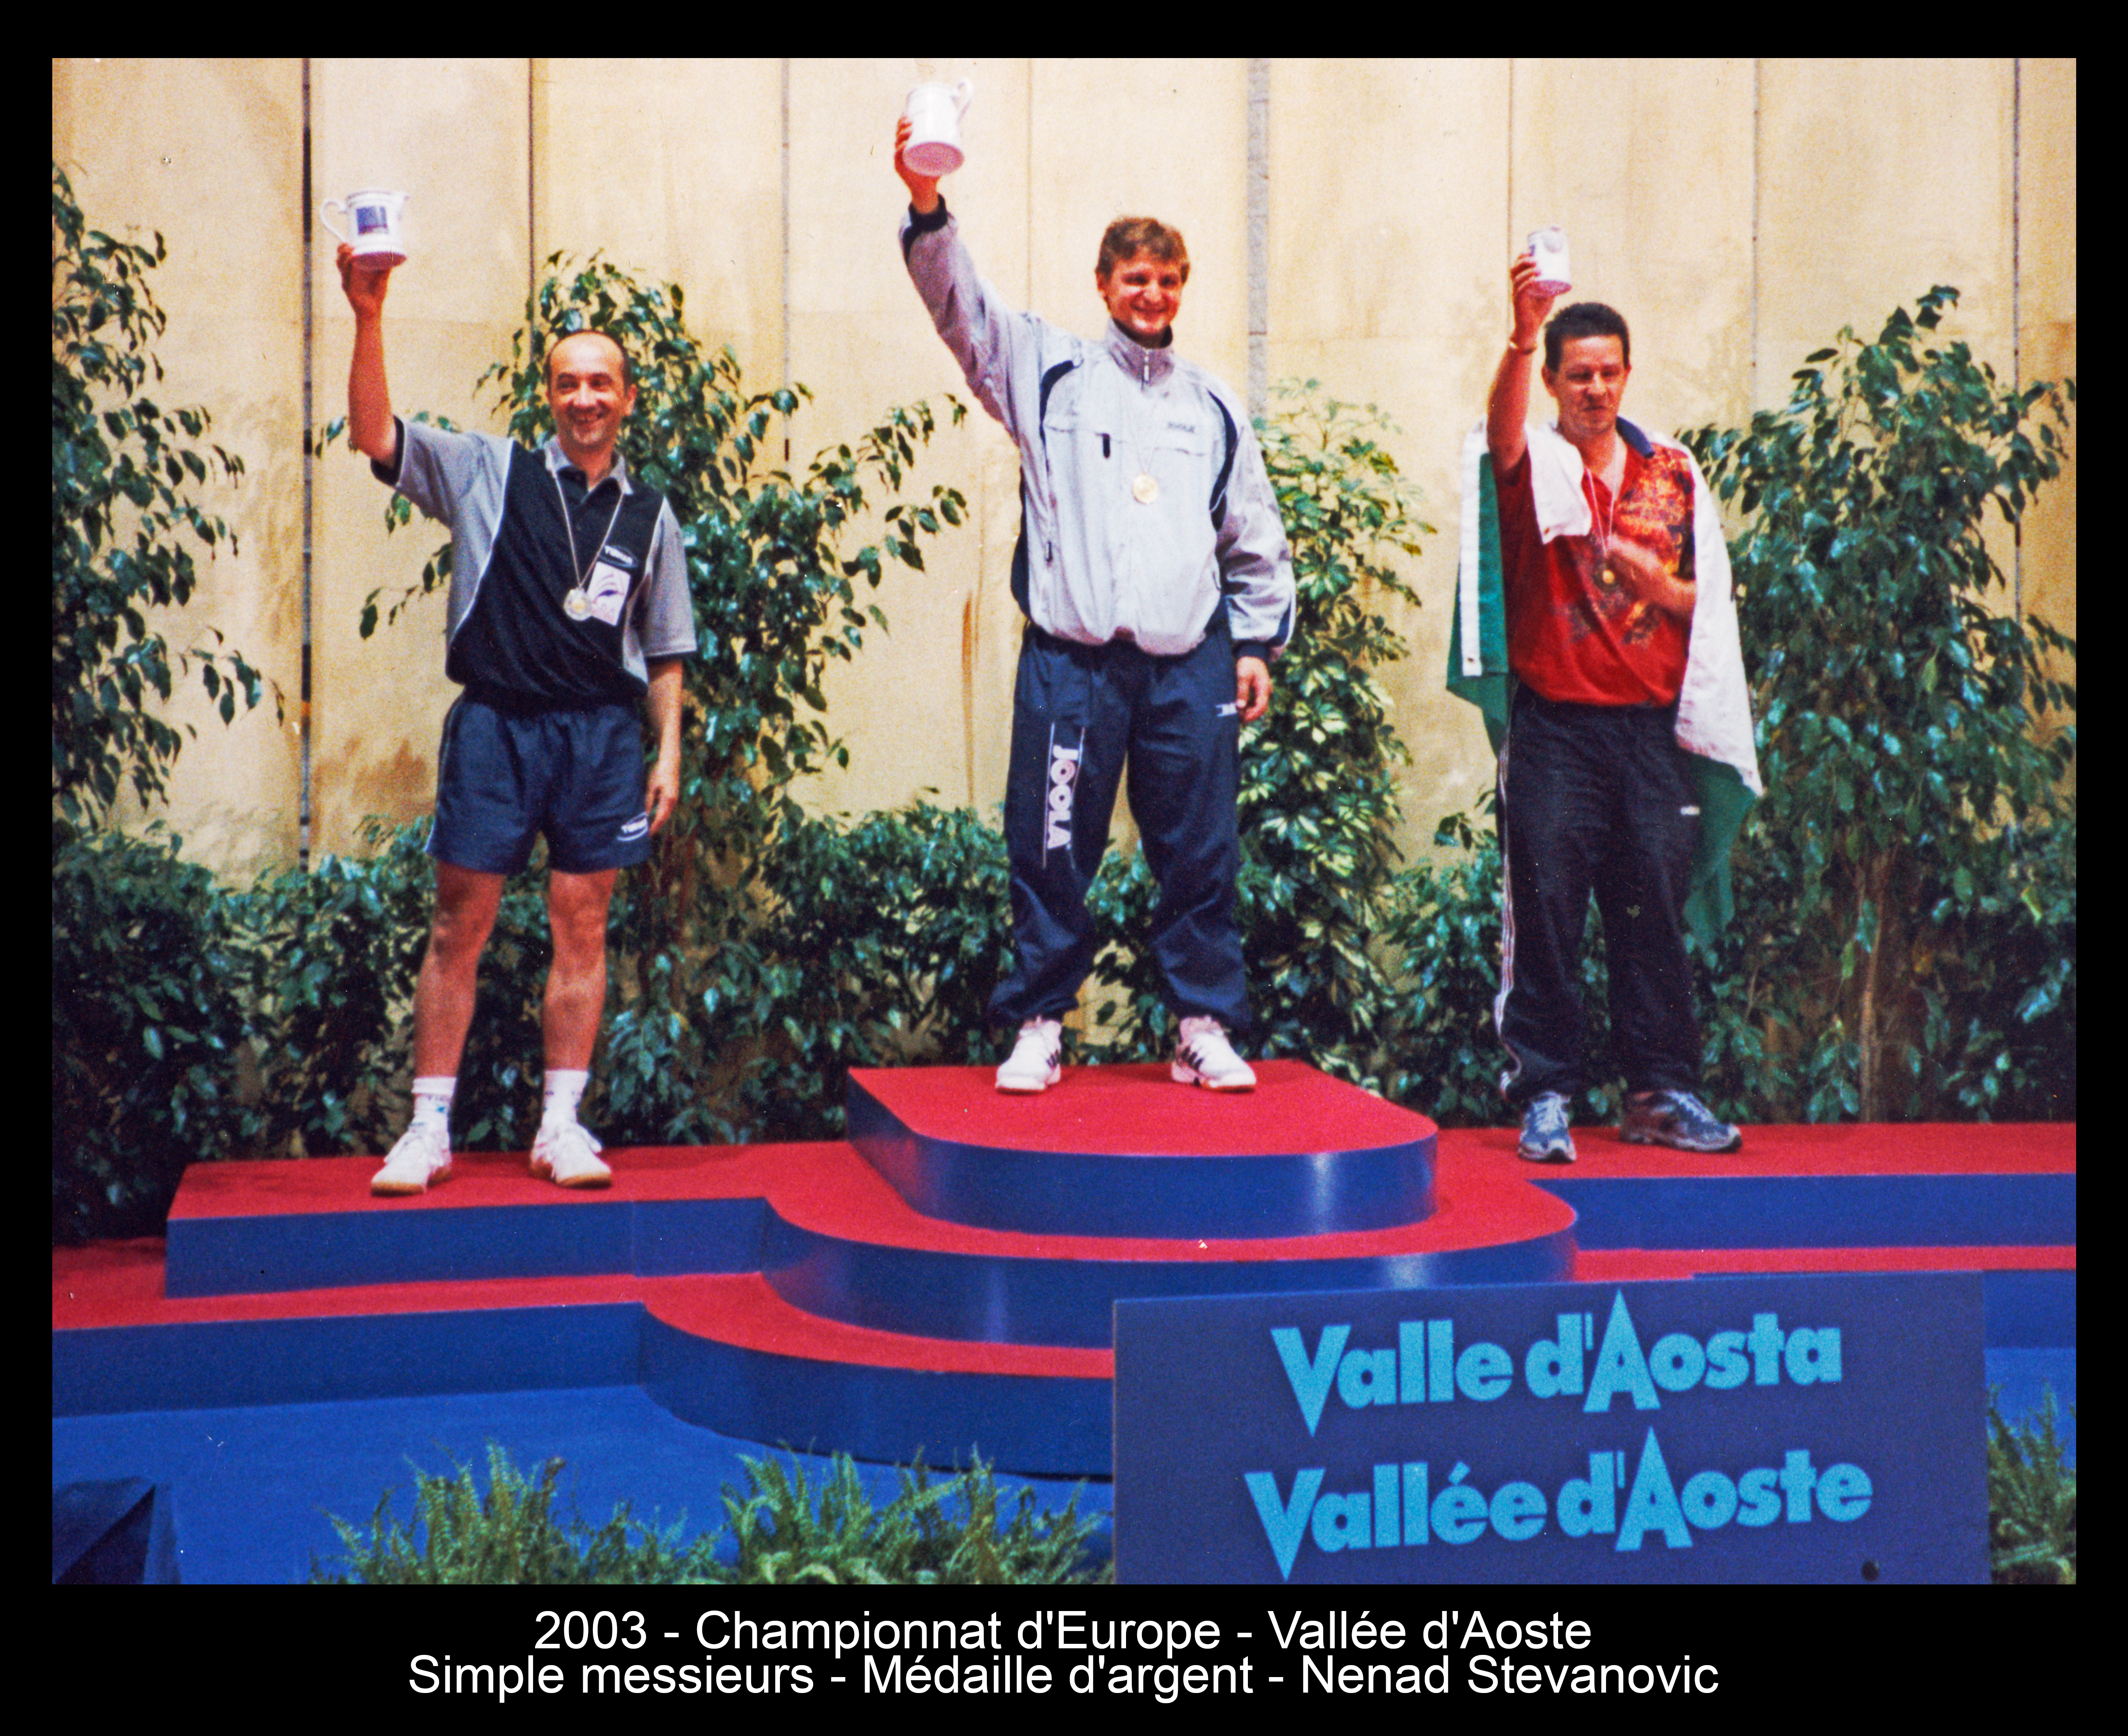 2003 - Championnat d'Europe - Vallée d'Aoste - Simple messieurs - Médaille d'argent - Nenad Stevanovic